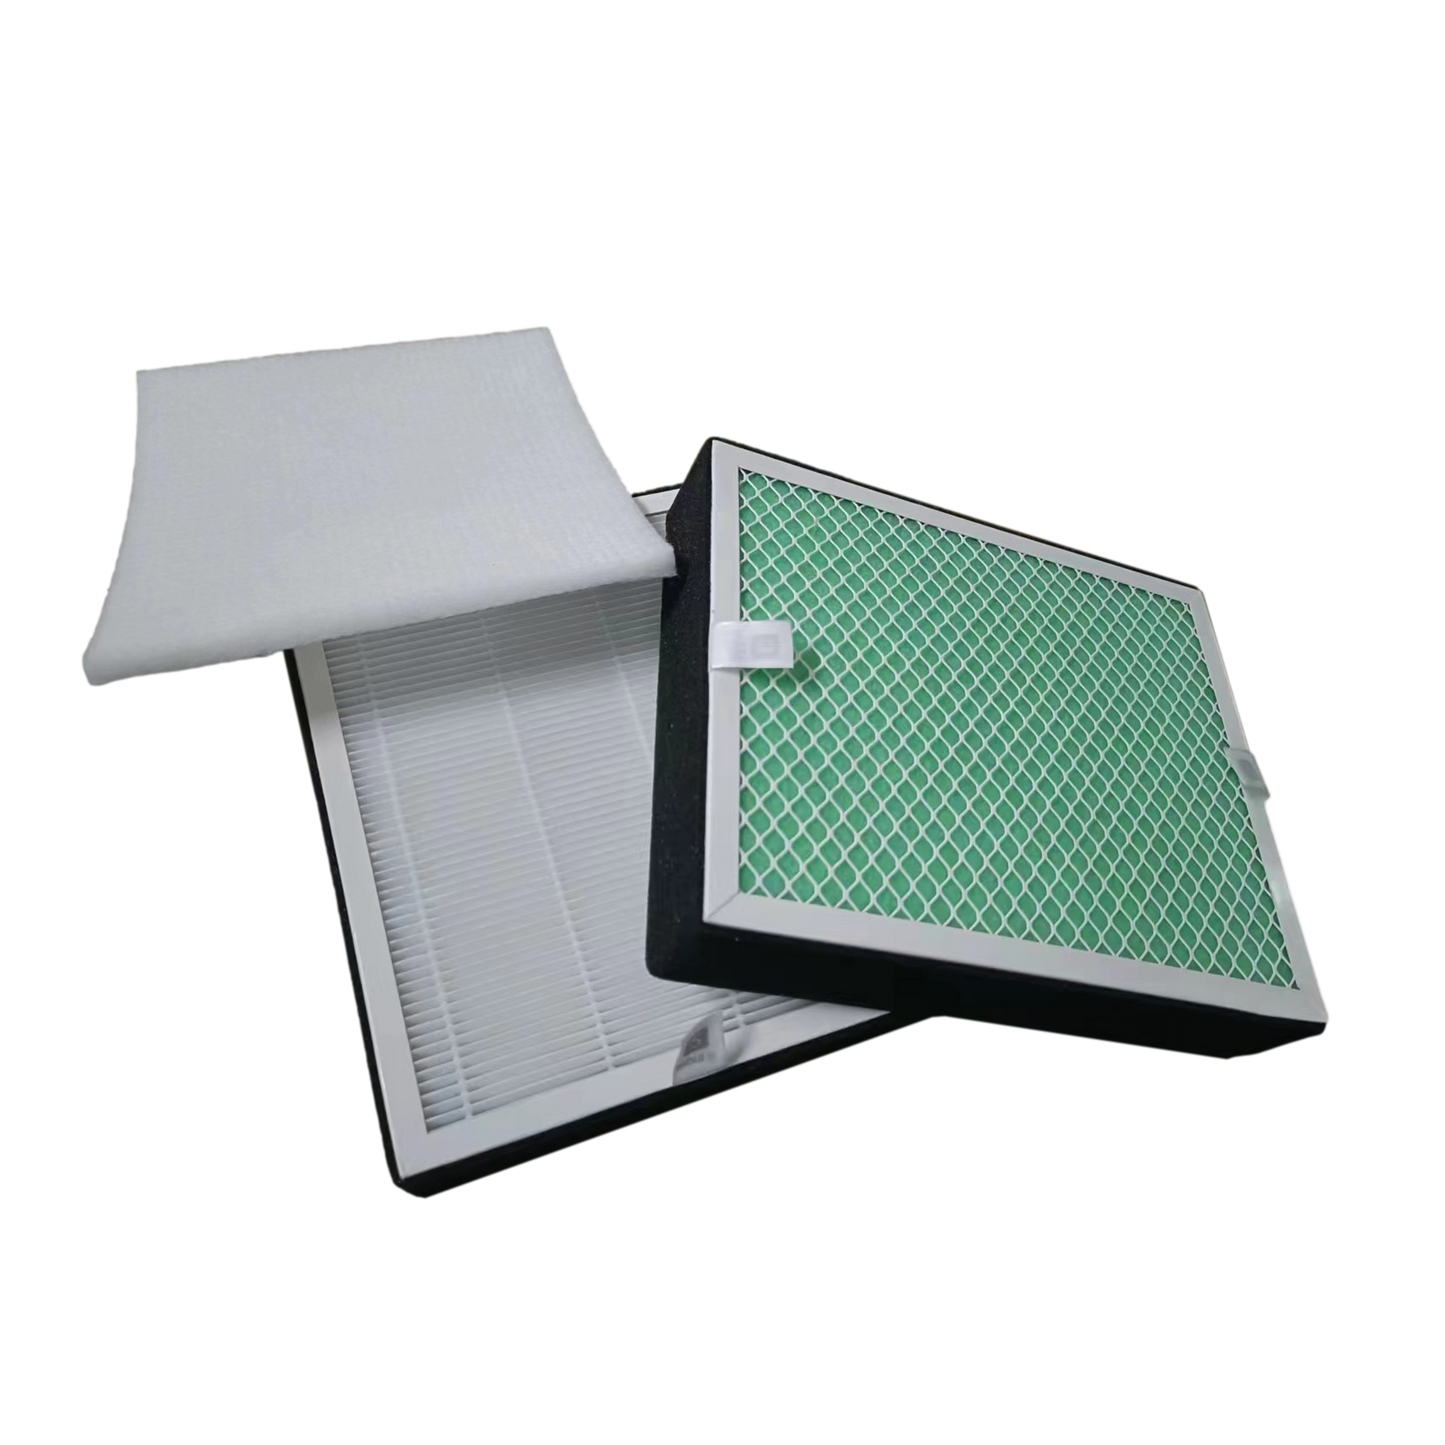 Valtcan Rauchabzugsfilter-Ersatzpaket – Vorfilter-Kohle und HEPA-Filter mit 0,3 Mikron und 99,97 % Filter